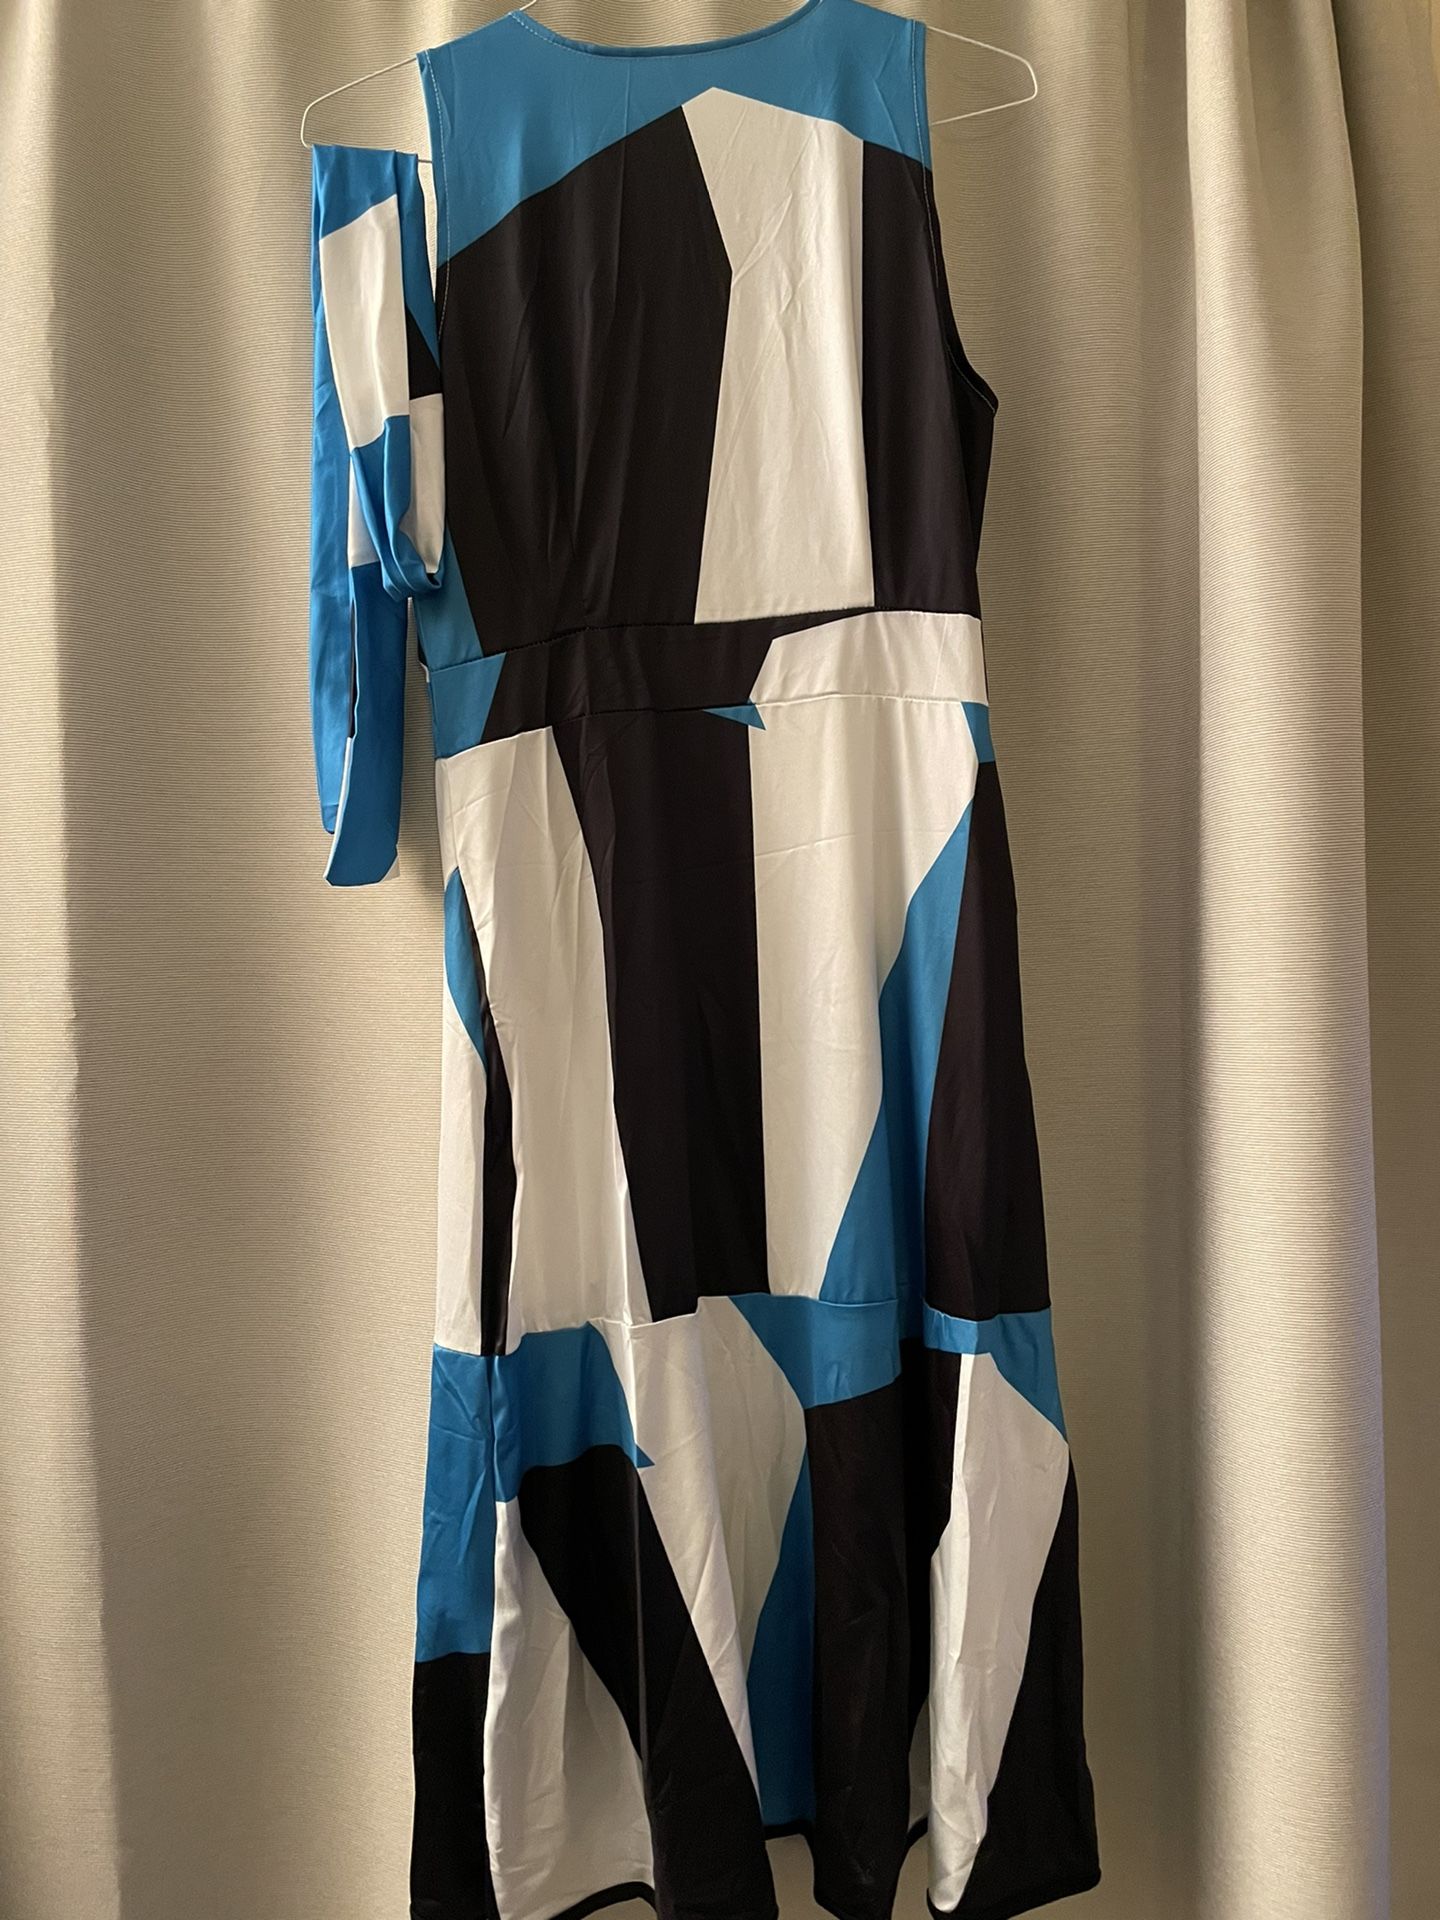 Homophony Woman Dress Sleeveless Irregular Dresses for Women Asymmetrical Sexy Dress Ruffle Dress Split Maxi Dress